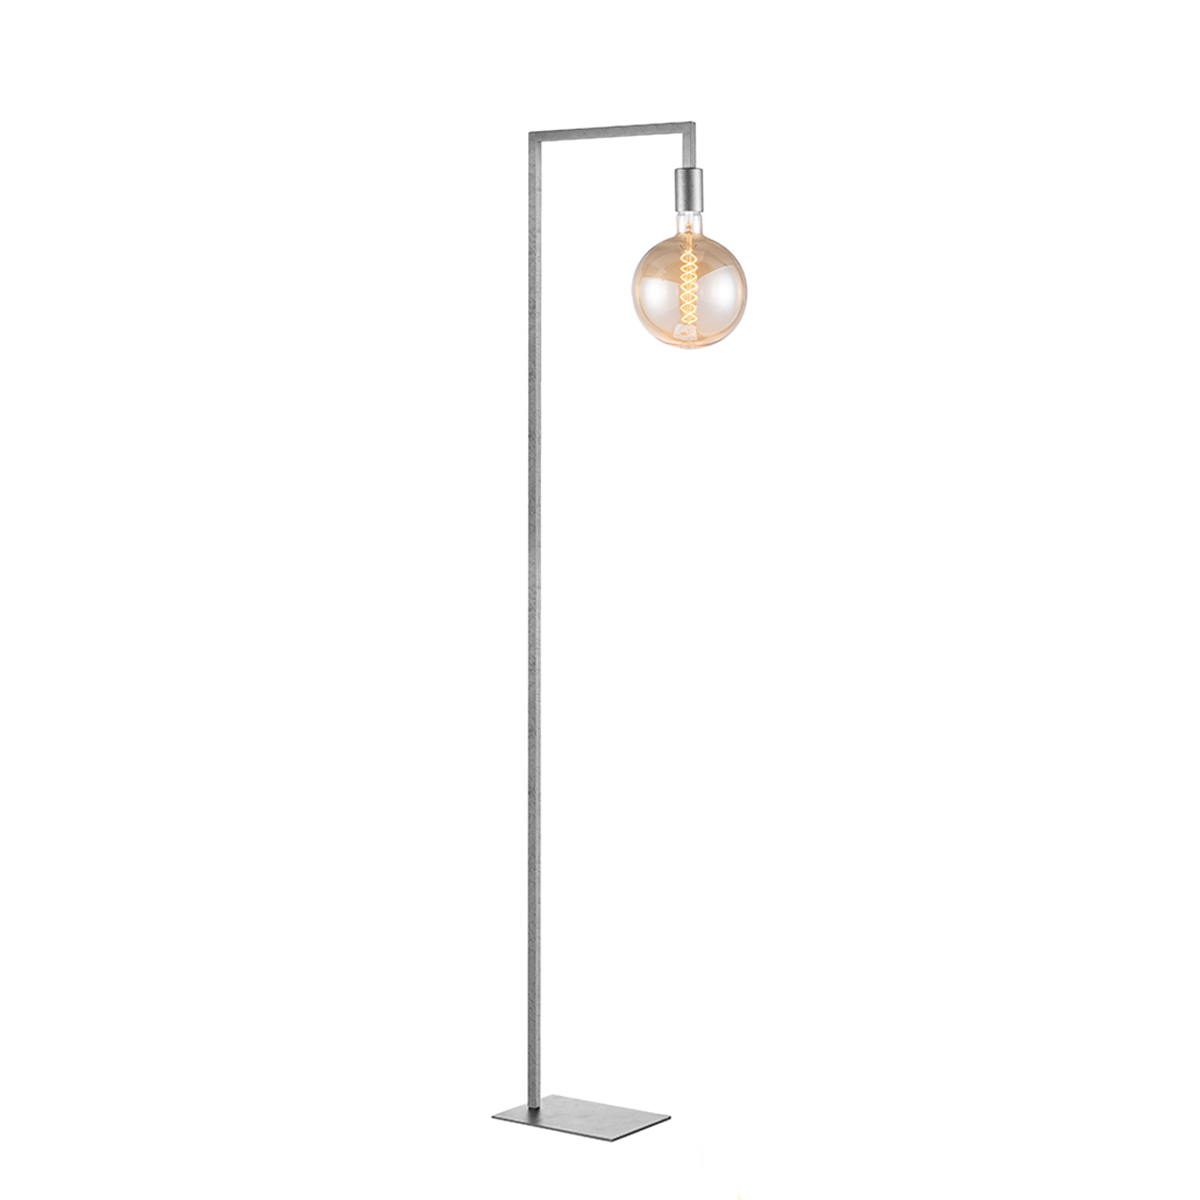 Tangla lighting - TLF2018-01GM - LED floor lamp 1 Light - metal in burned metal - square - E27